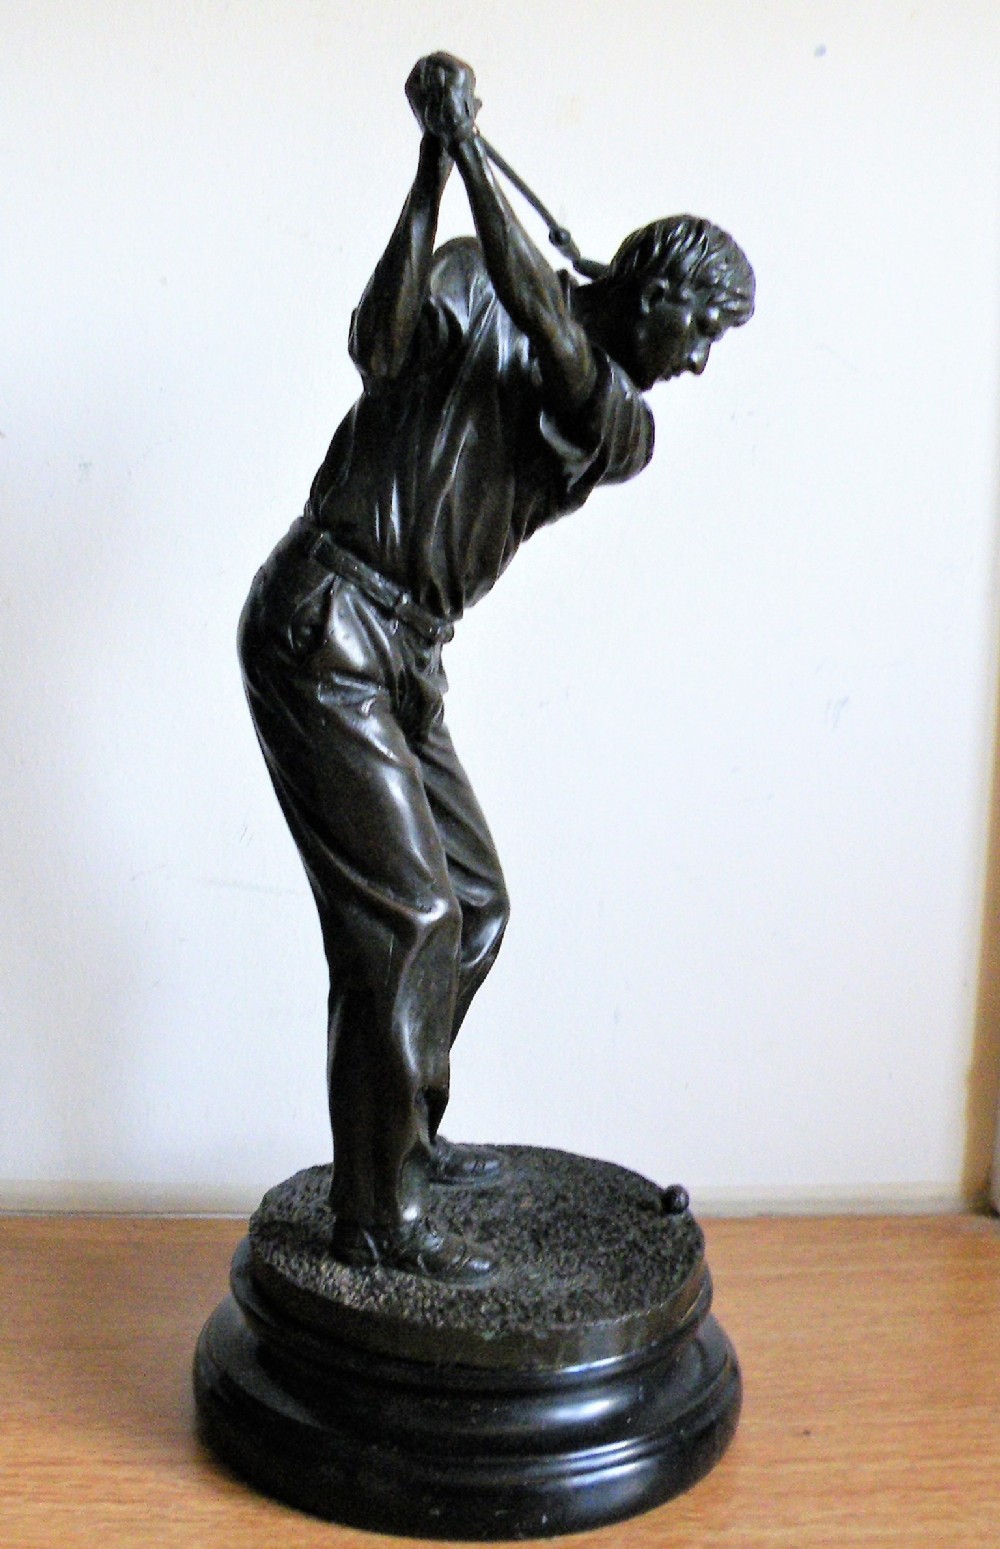 a good bronze figure of a golfer